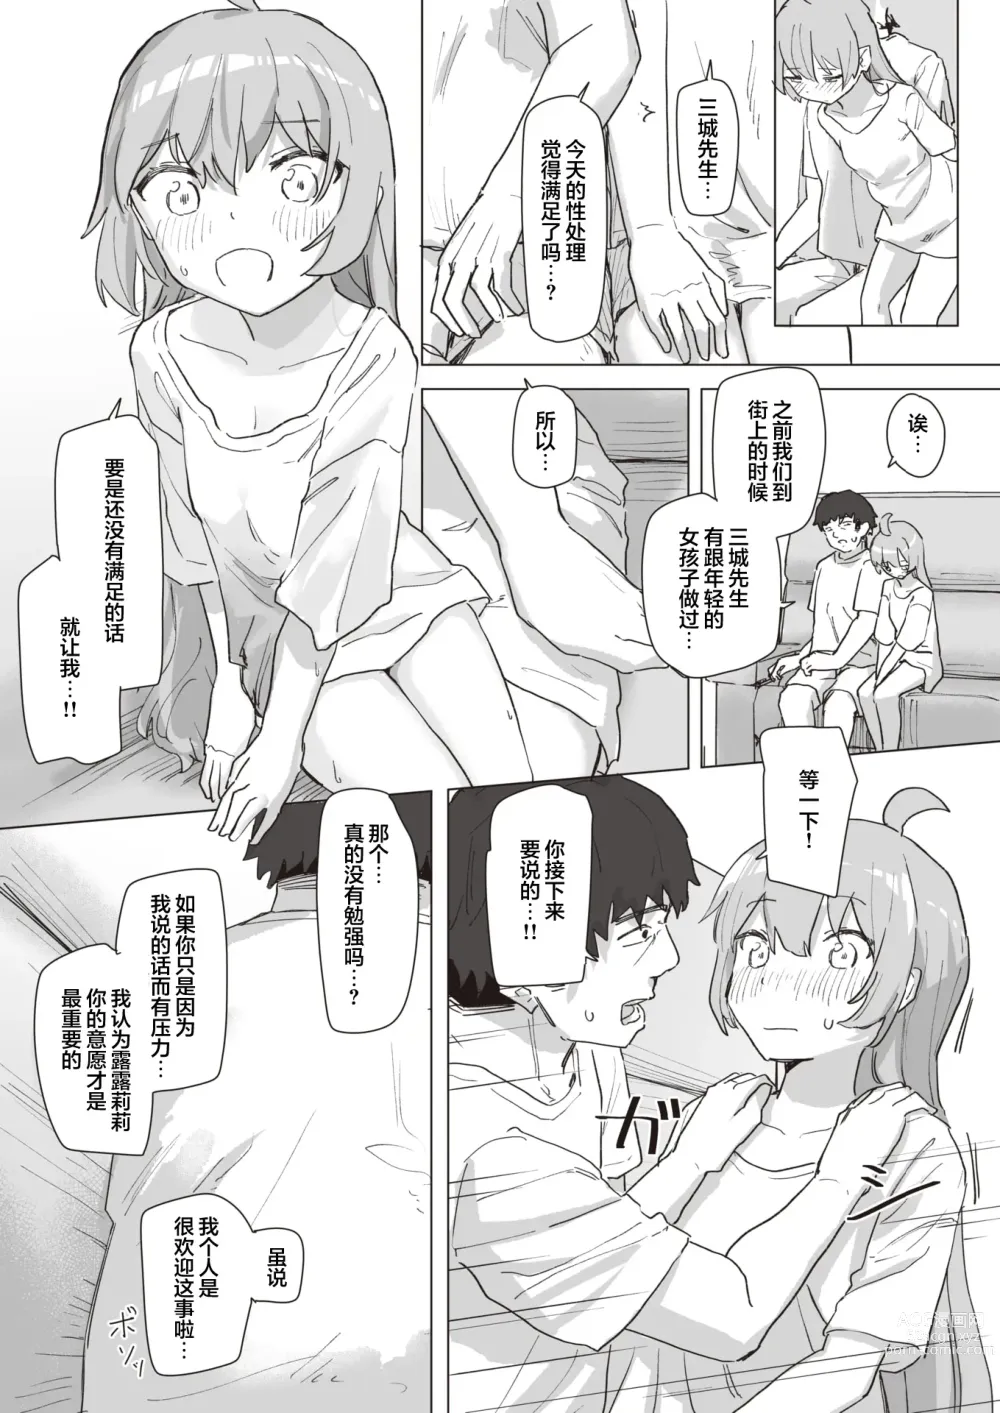 Page 9 of manga Mahou Shoujo no Ongaeshi Kouhen - Magical Girls Giving Back